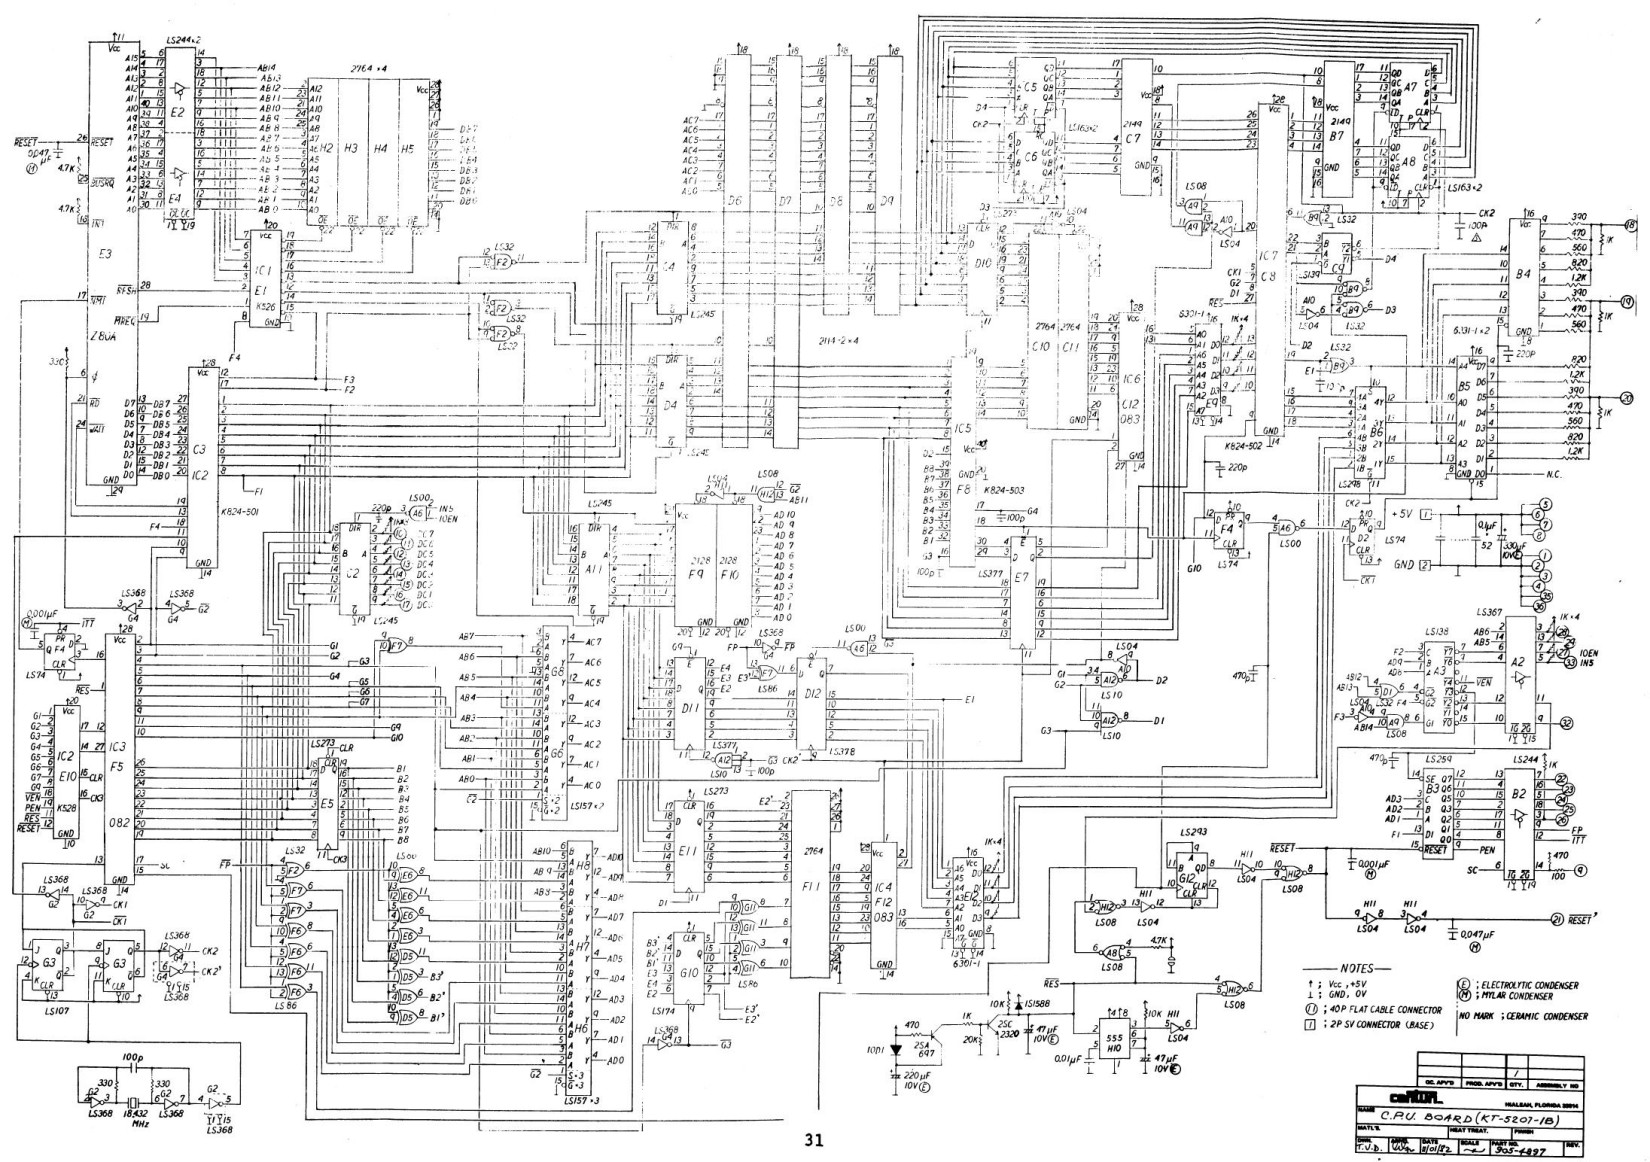 Time Pilot (CPU 600dpi) (Schematics) (U)